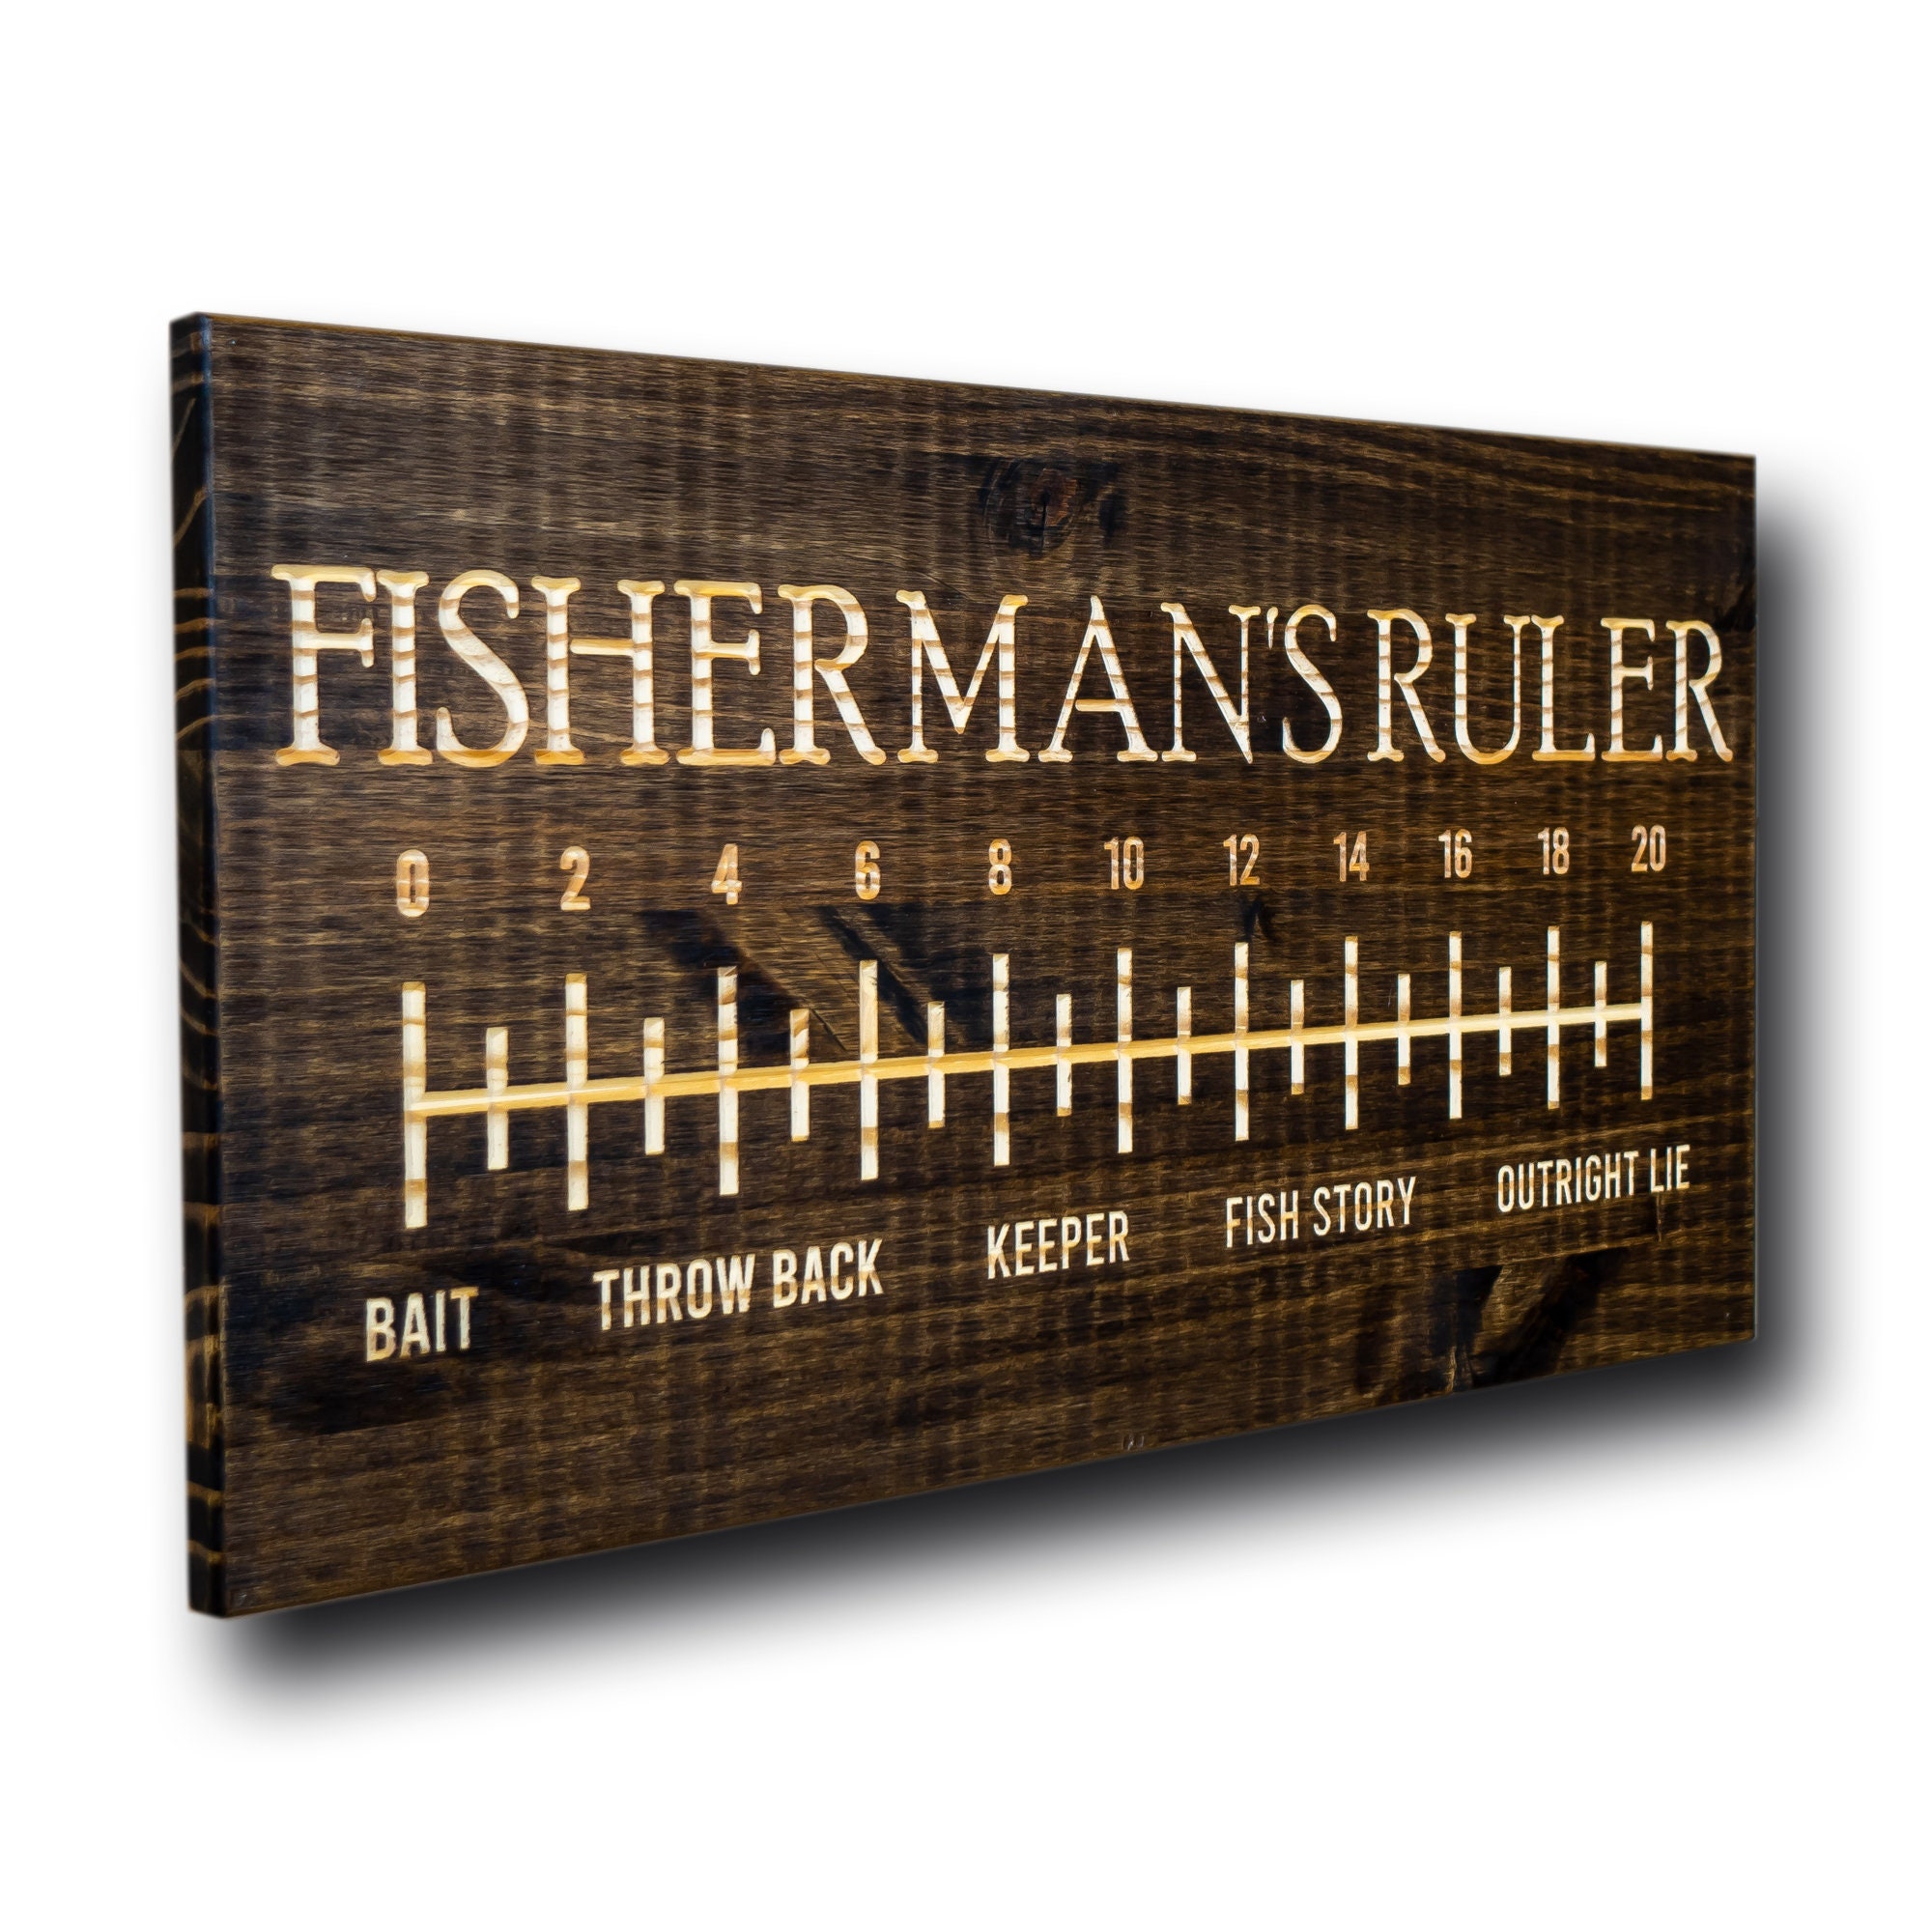 Marine City Fishing Aluminium Fish Ruler 18 inch for Fishing Boat